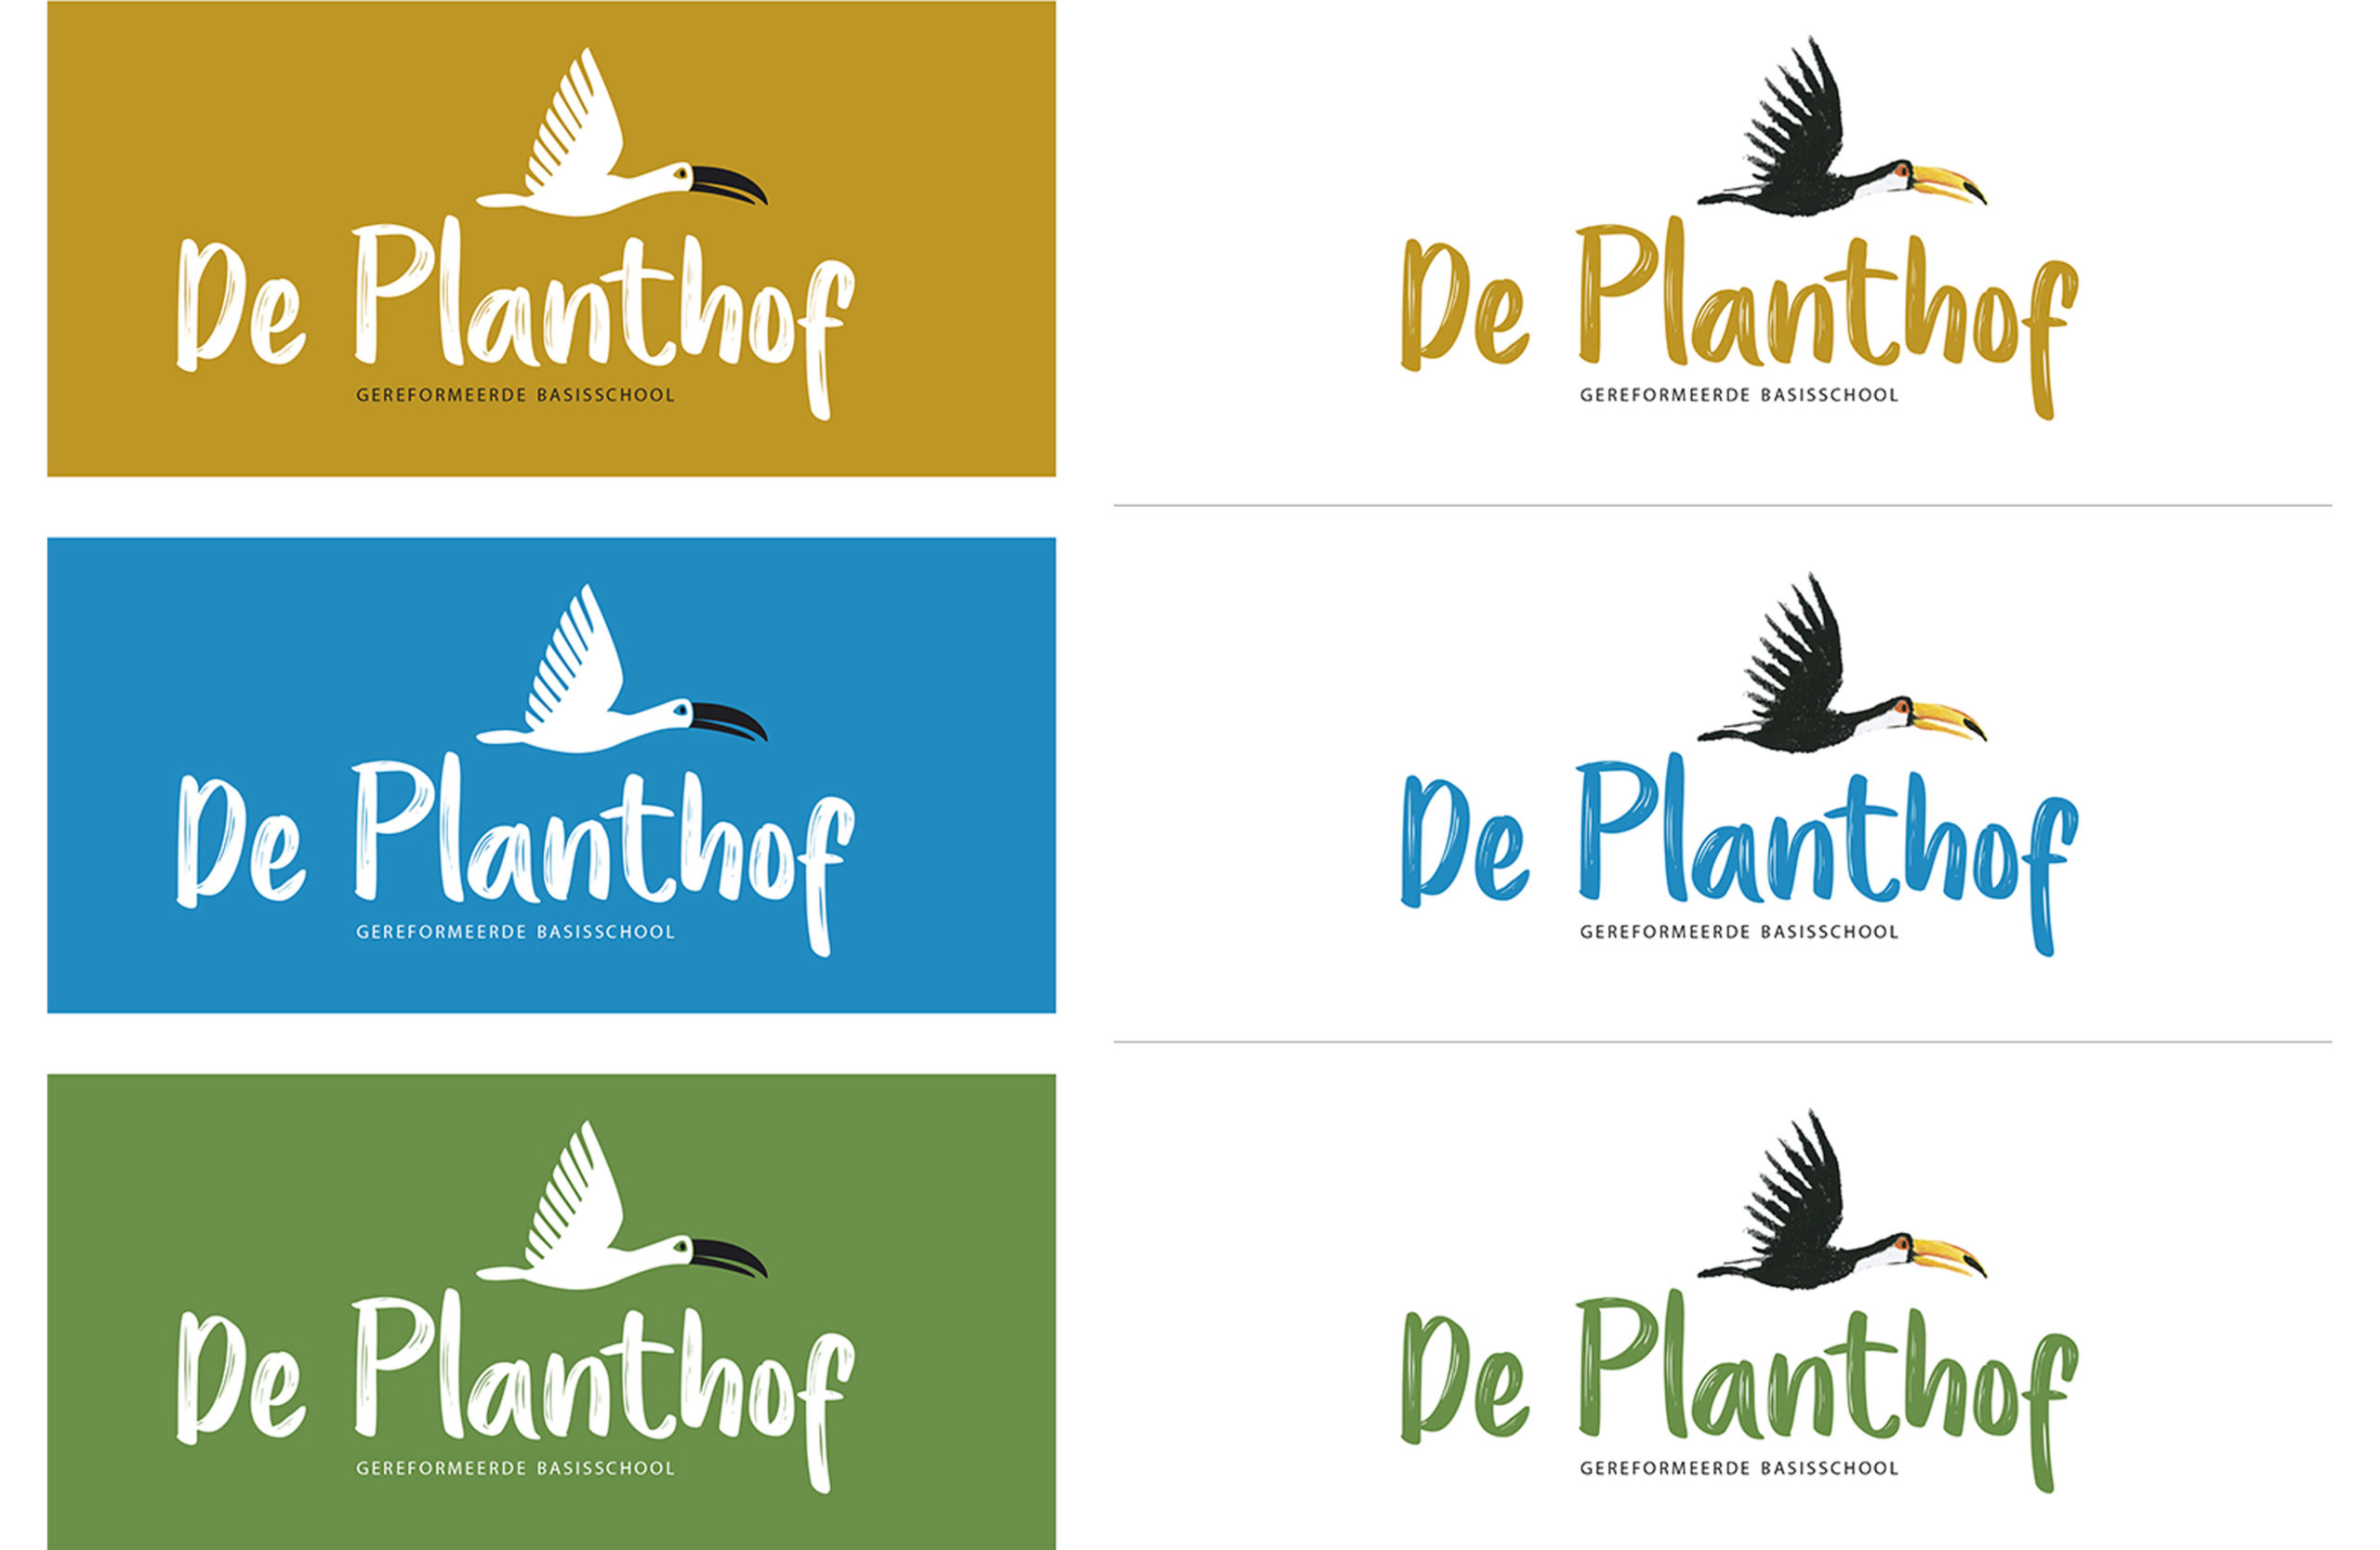 Logovoorstellen voor basisschool De Planthof - 2018